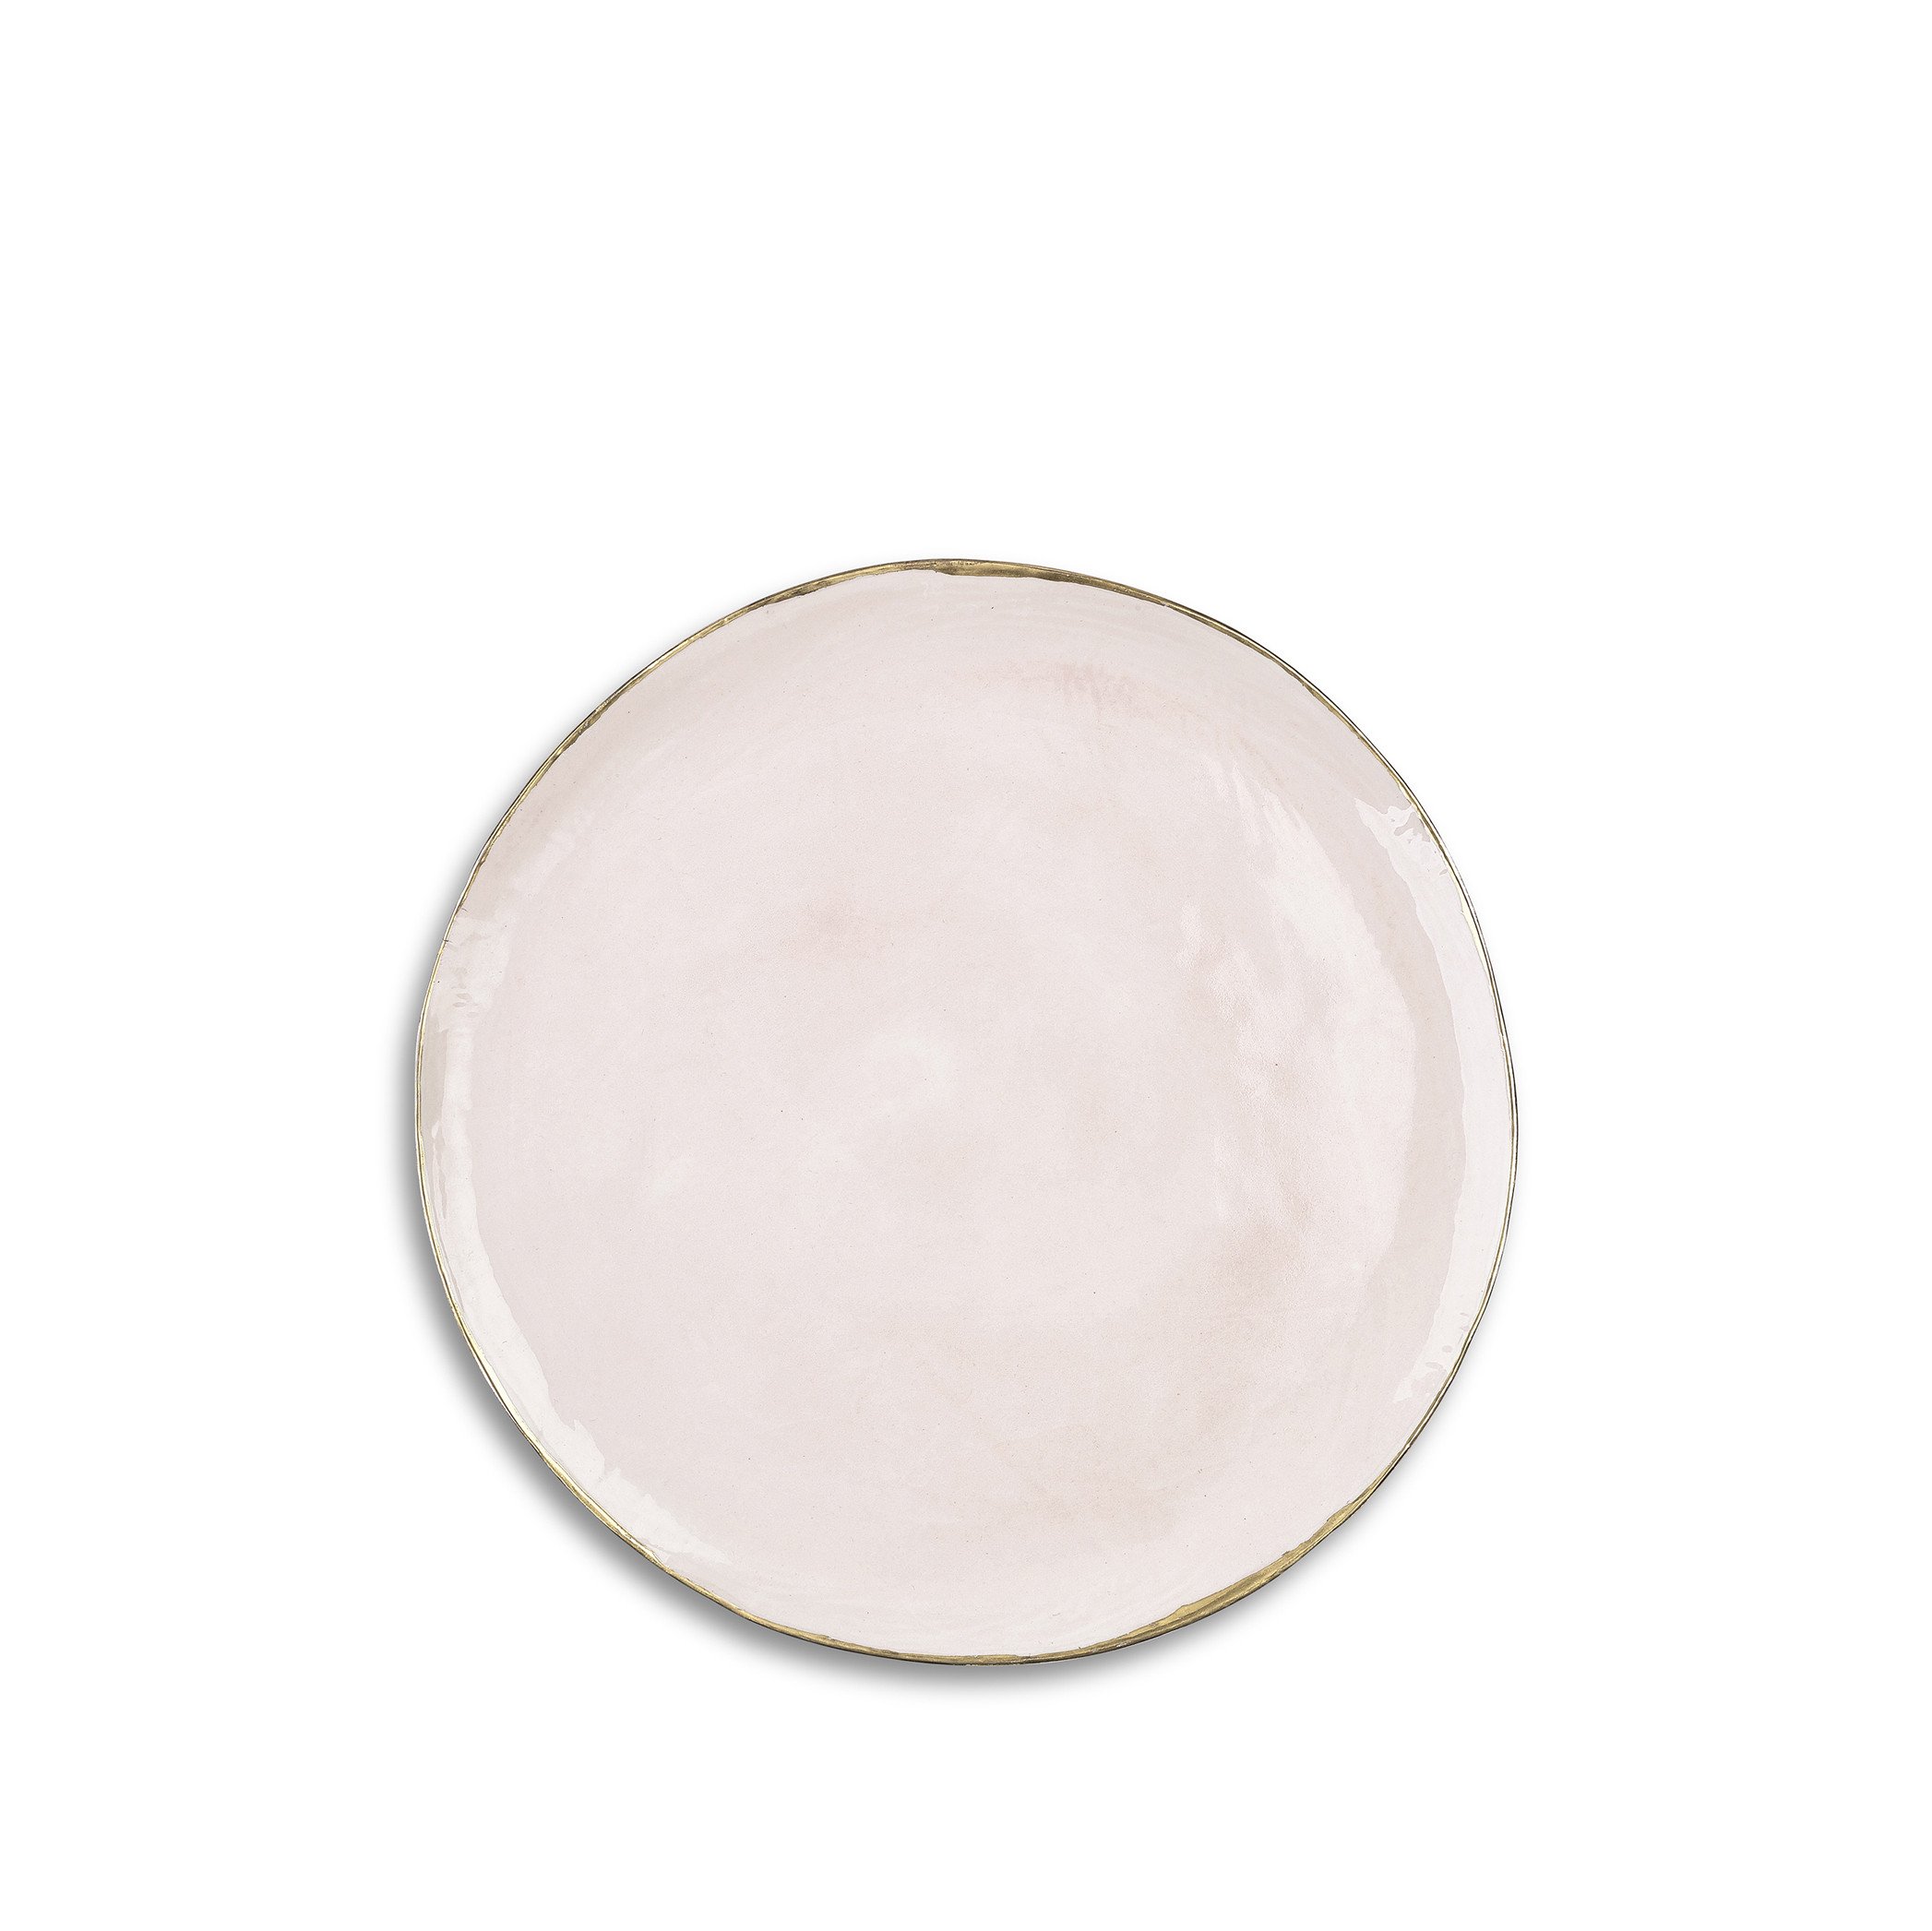 Medium Pink Ceramic Plate with Gold Rim, 28cm – Summerill & Bishop